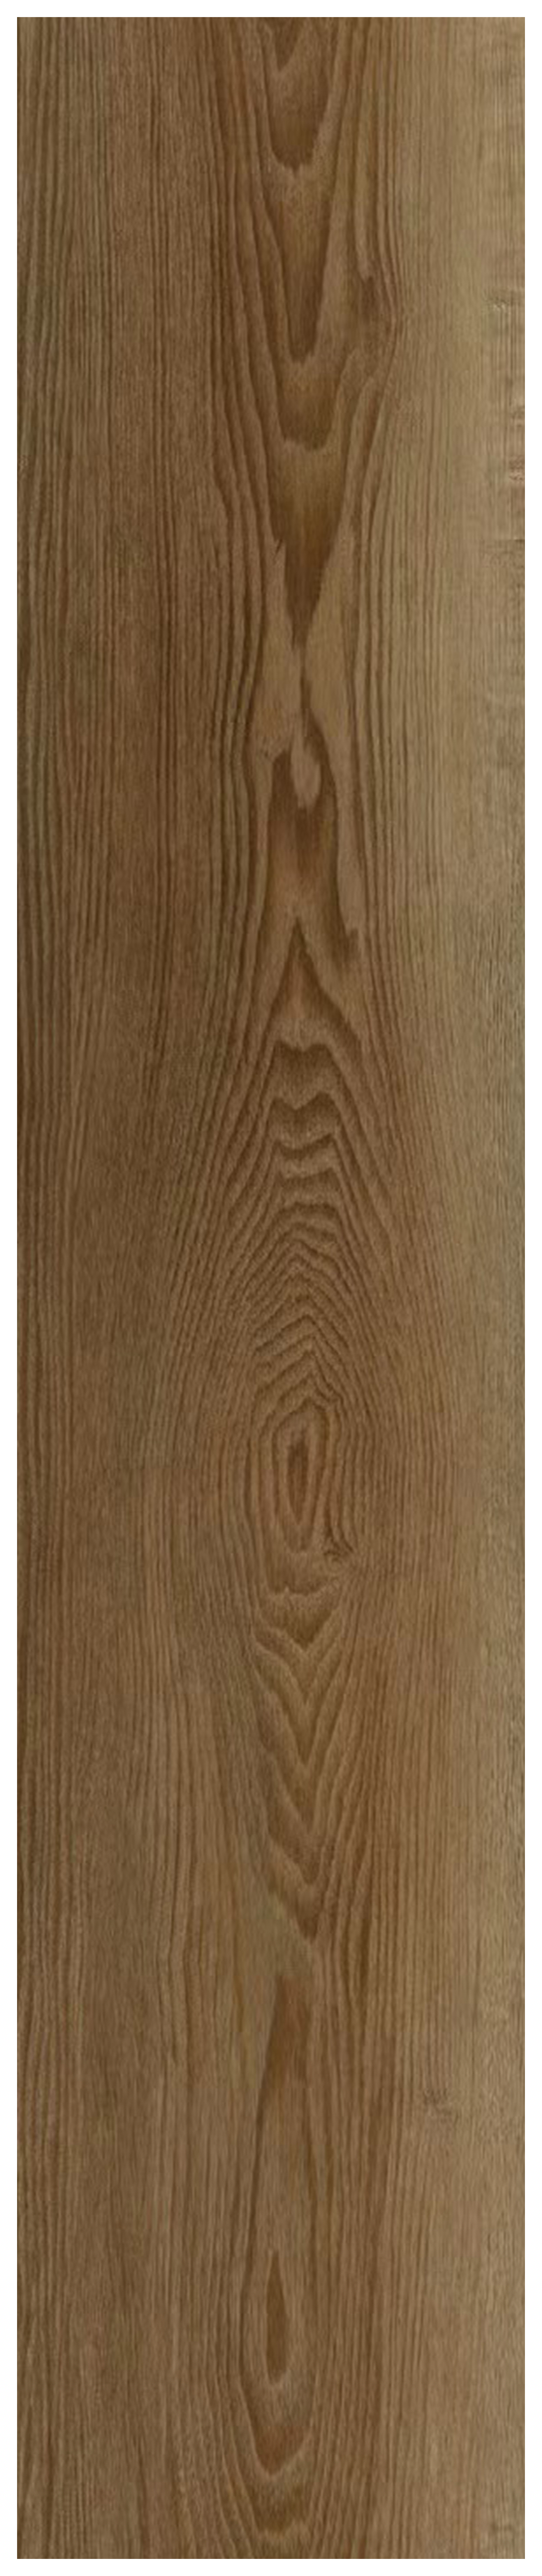 Warwick Golden Oak Herringbone Spc Flooring with Integrated Underlay - Sample